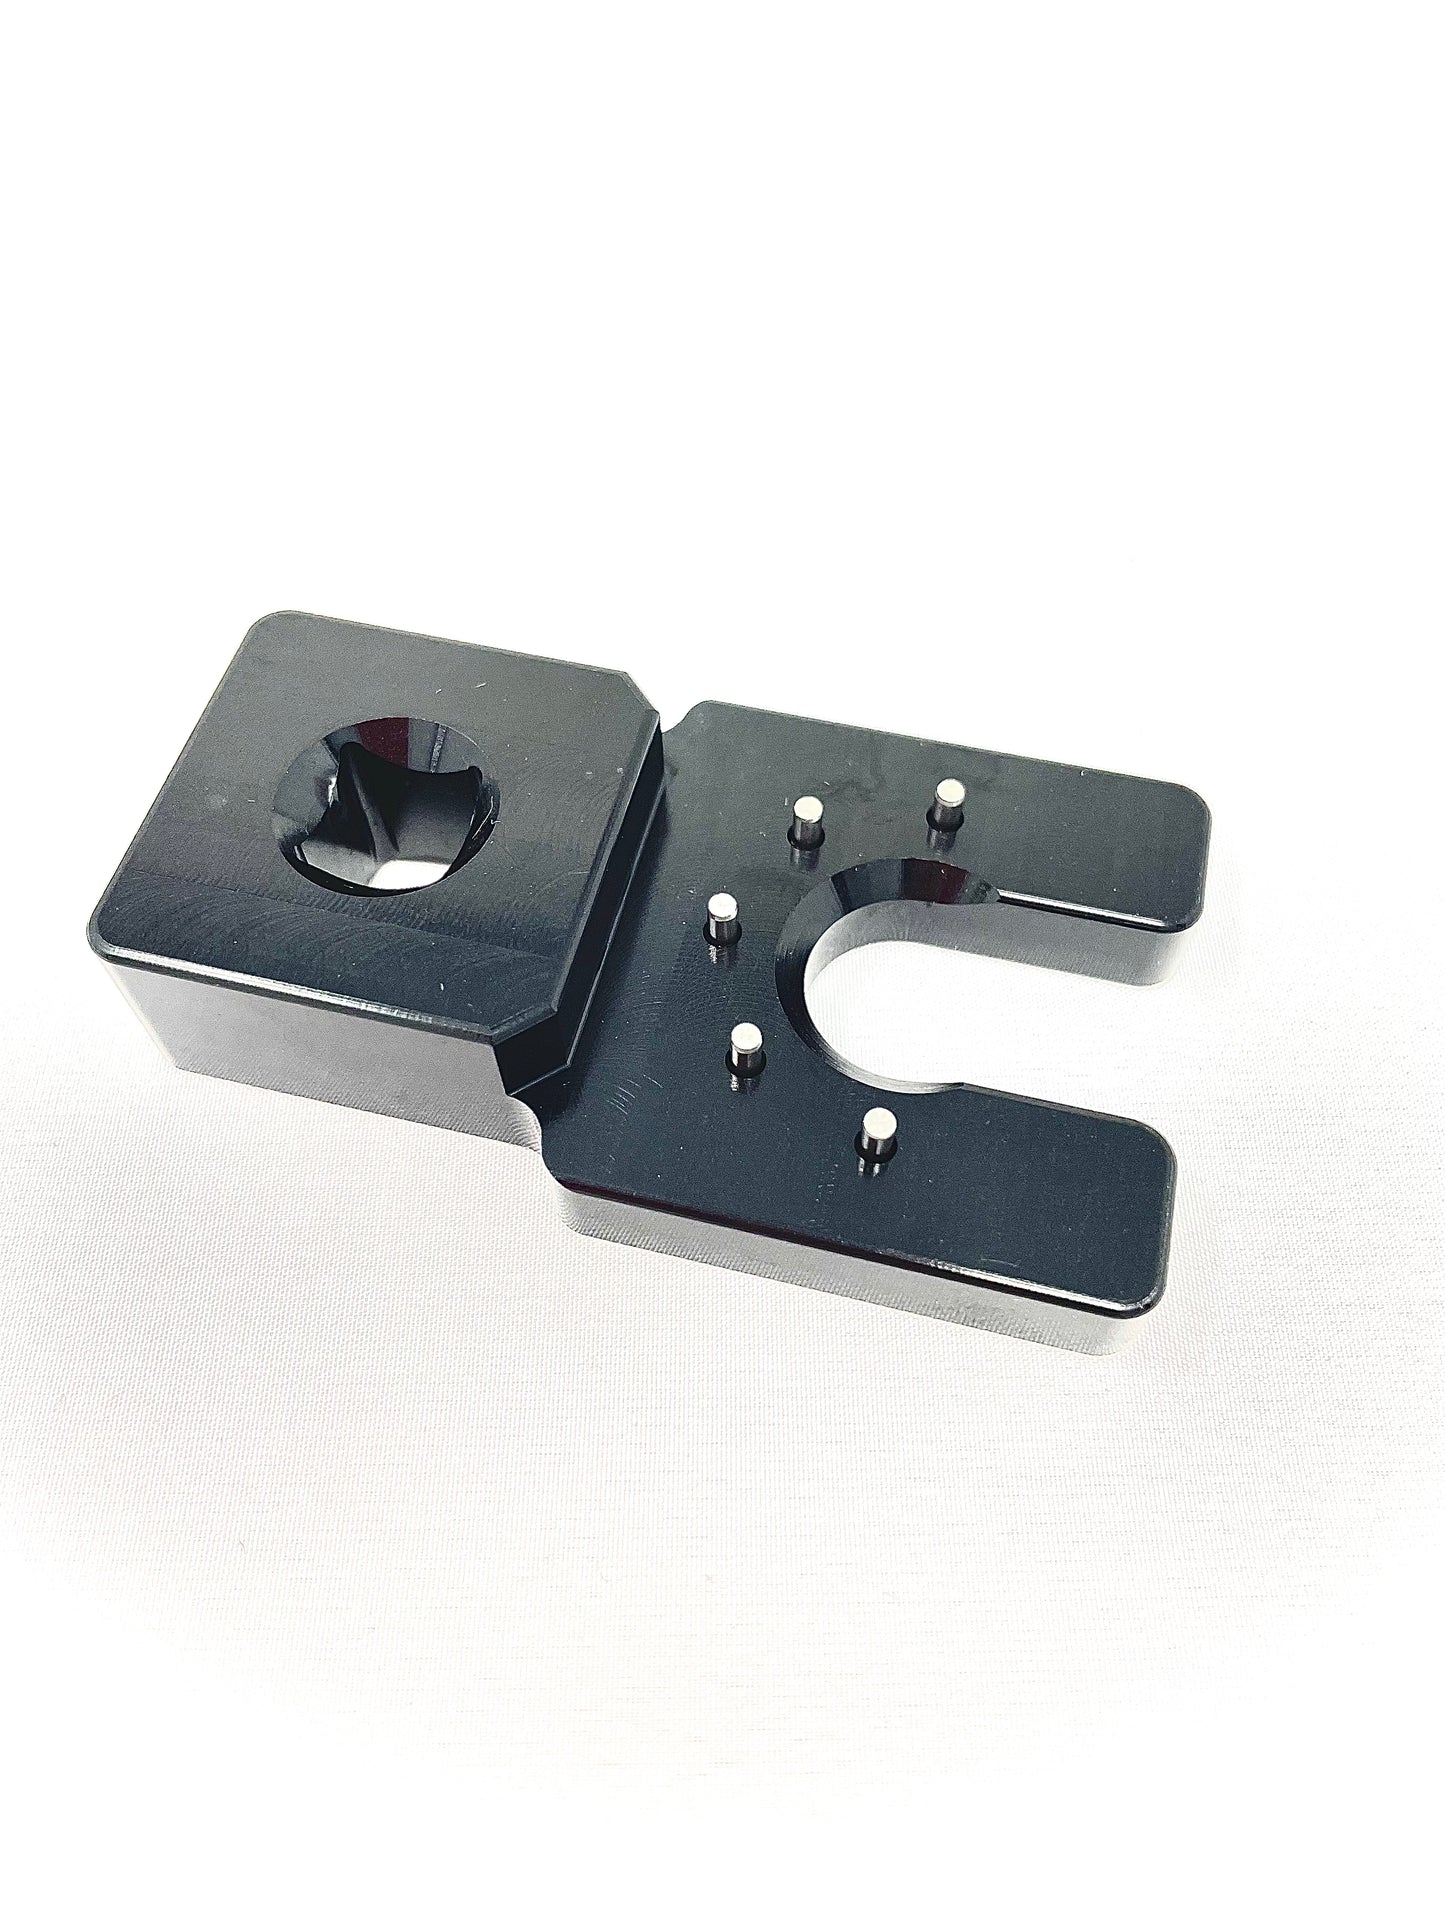 MOD Shock Seal Block Pin Spanner Tool - AM40030-00